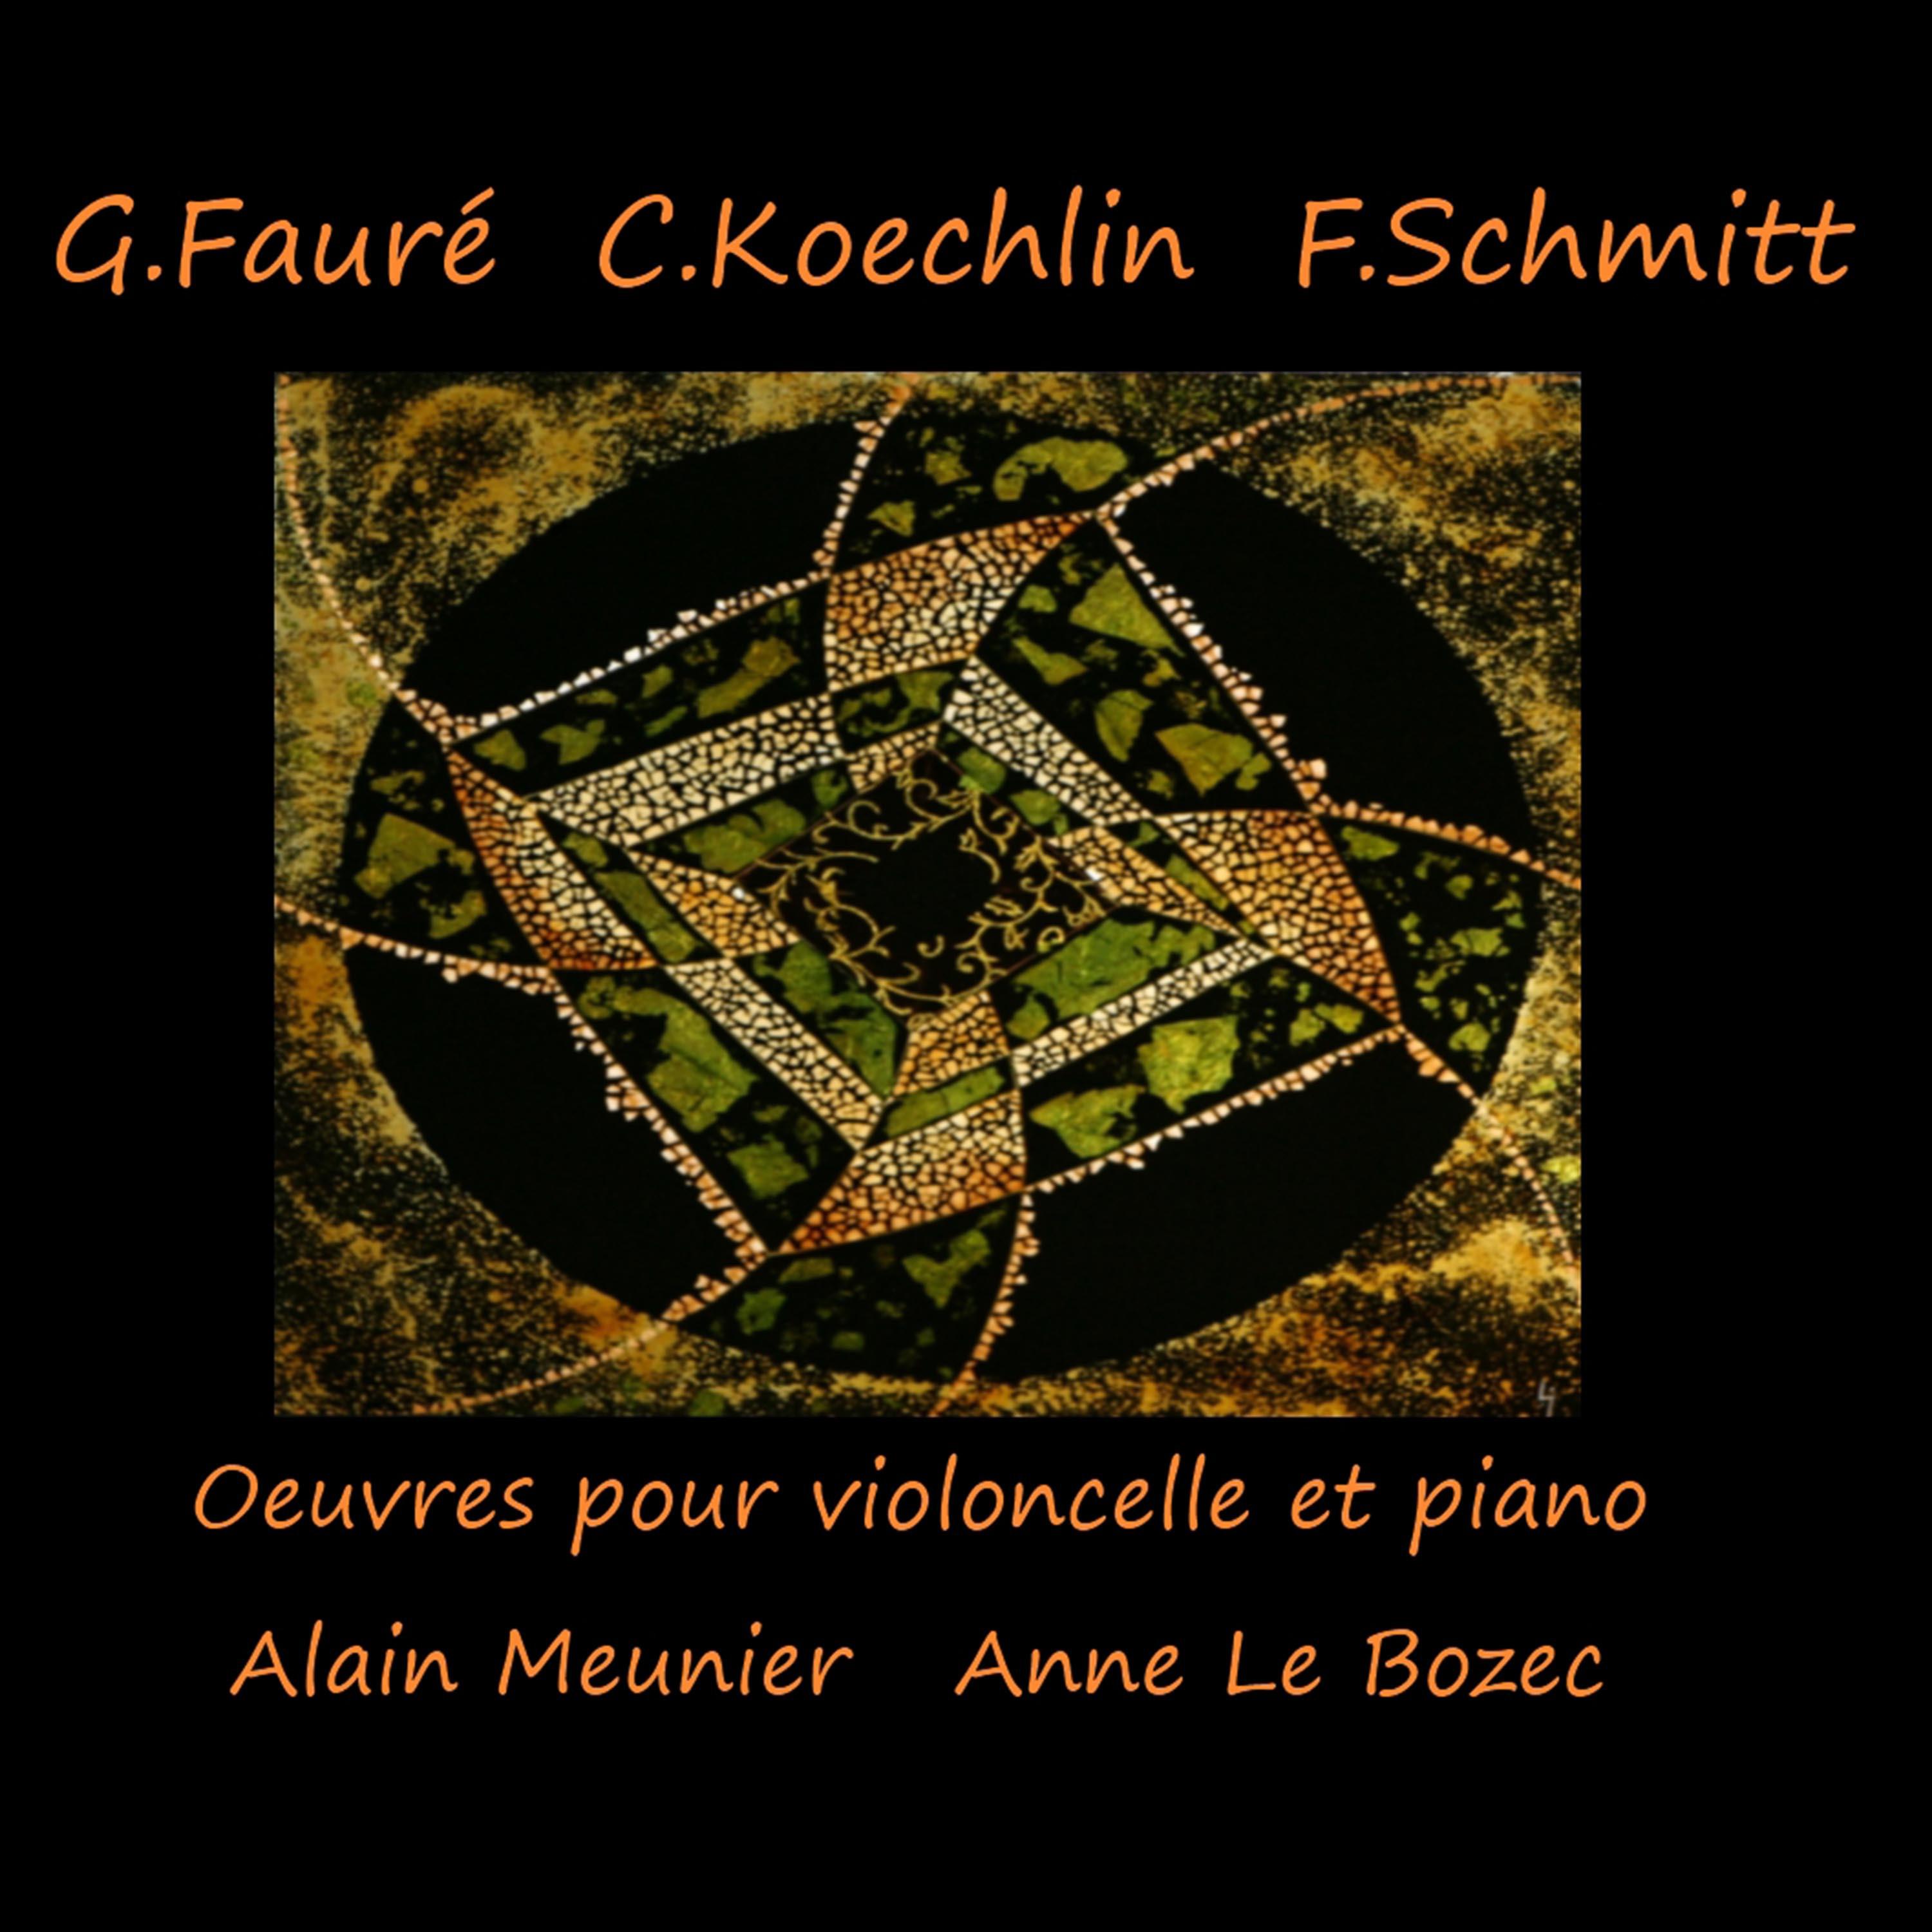 Sonate pour violoncelle et piano en Ut Majeur, Op. 66: III. Final. Allegro non troppo